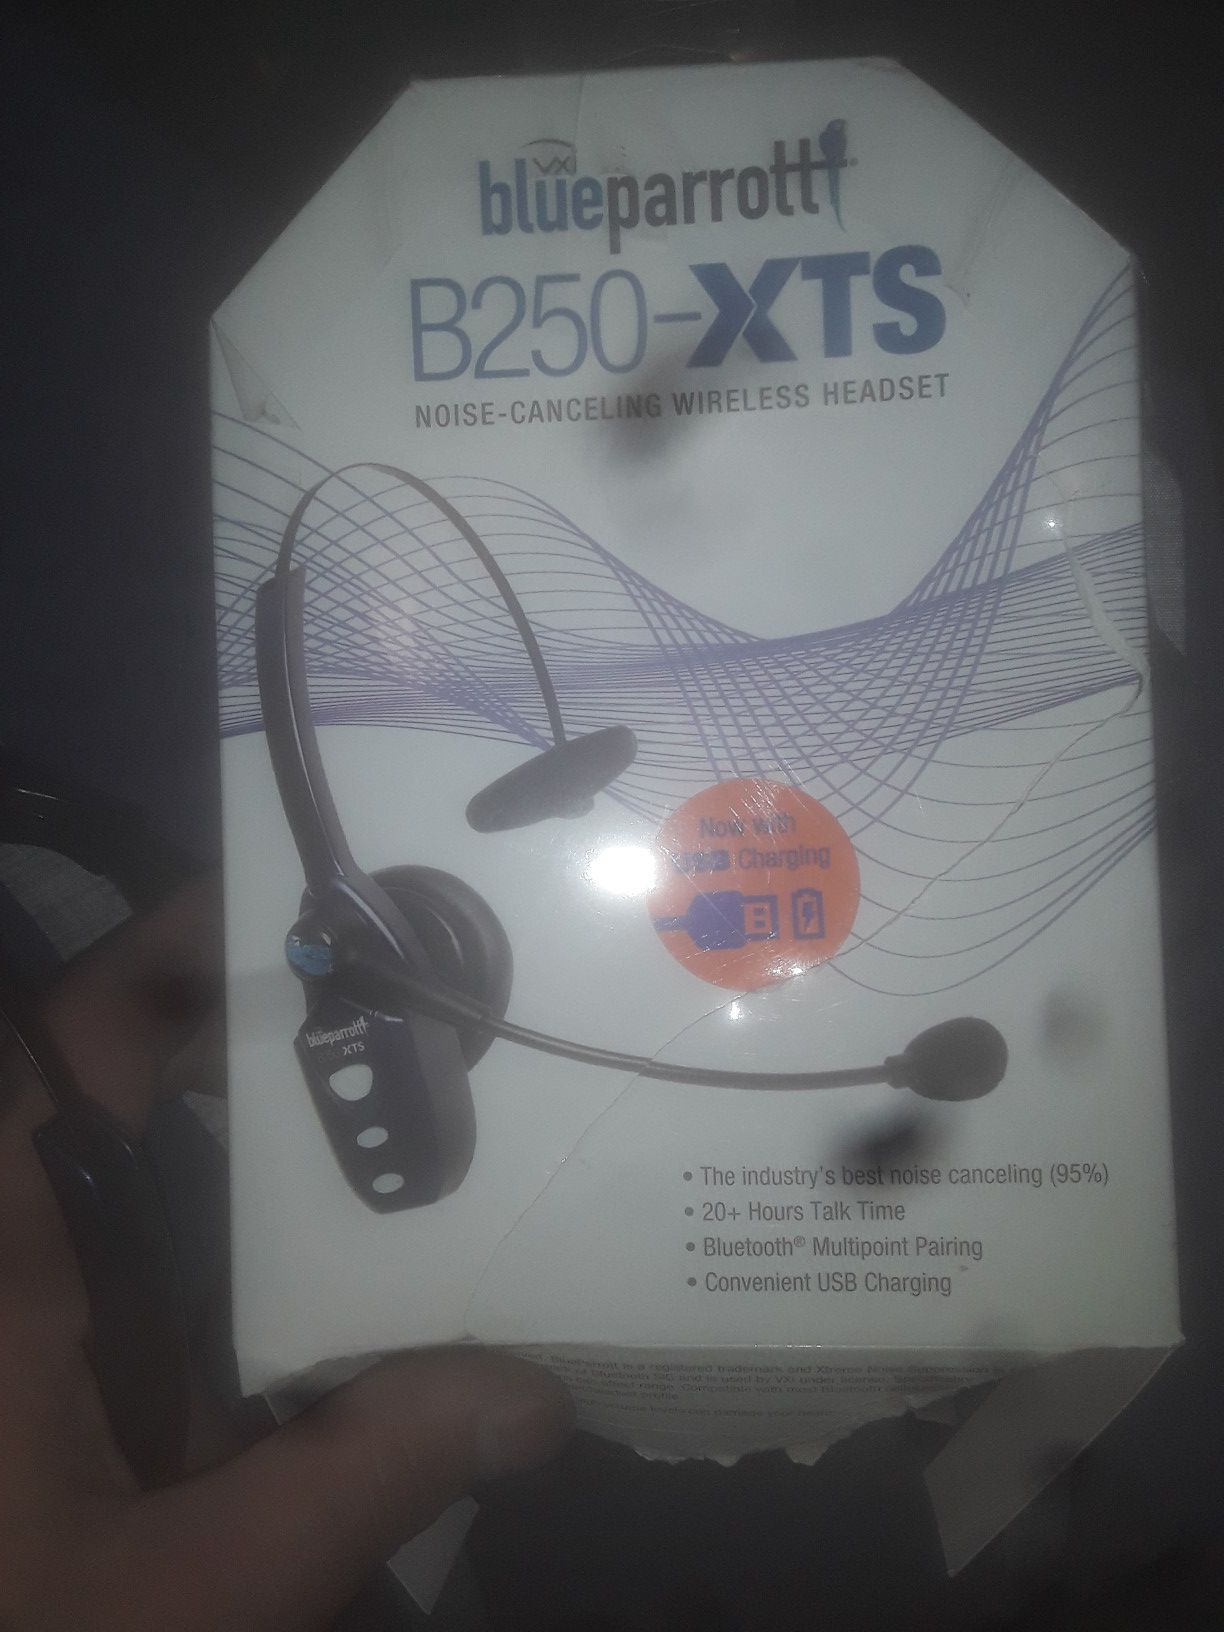 BlueParrott B250 XTS wireless headset